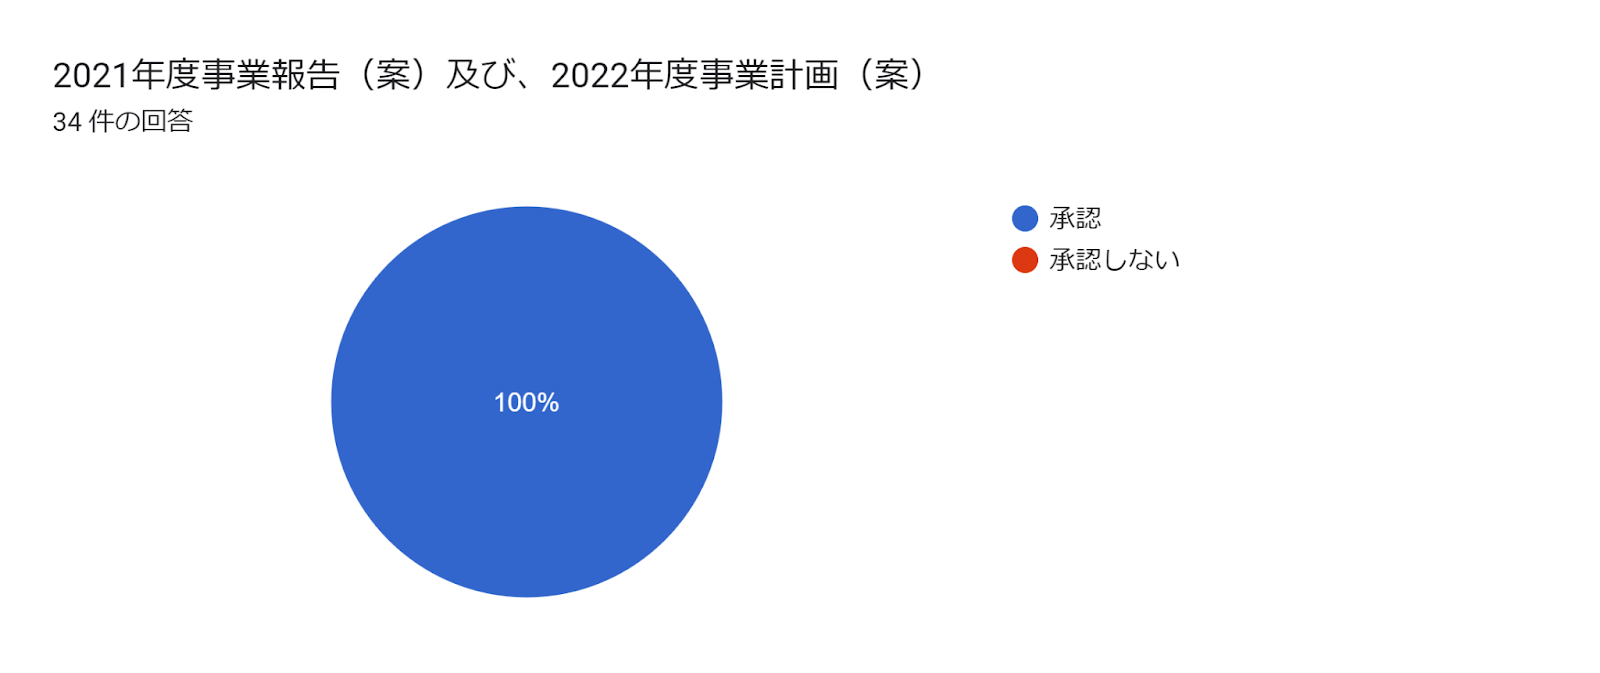 フォームの回答のグラフ。質問のタイトル: 2021年度事業報告（案）及び、2022年度事業計画（案）。回答数: 34 件の回答。